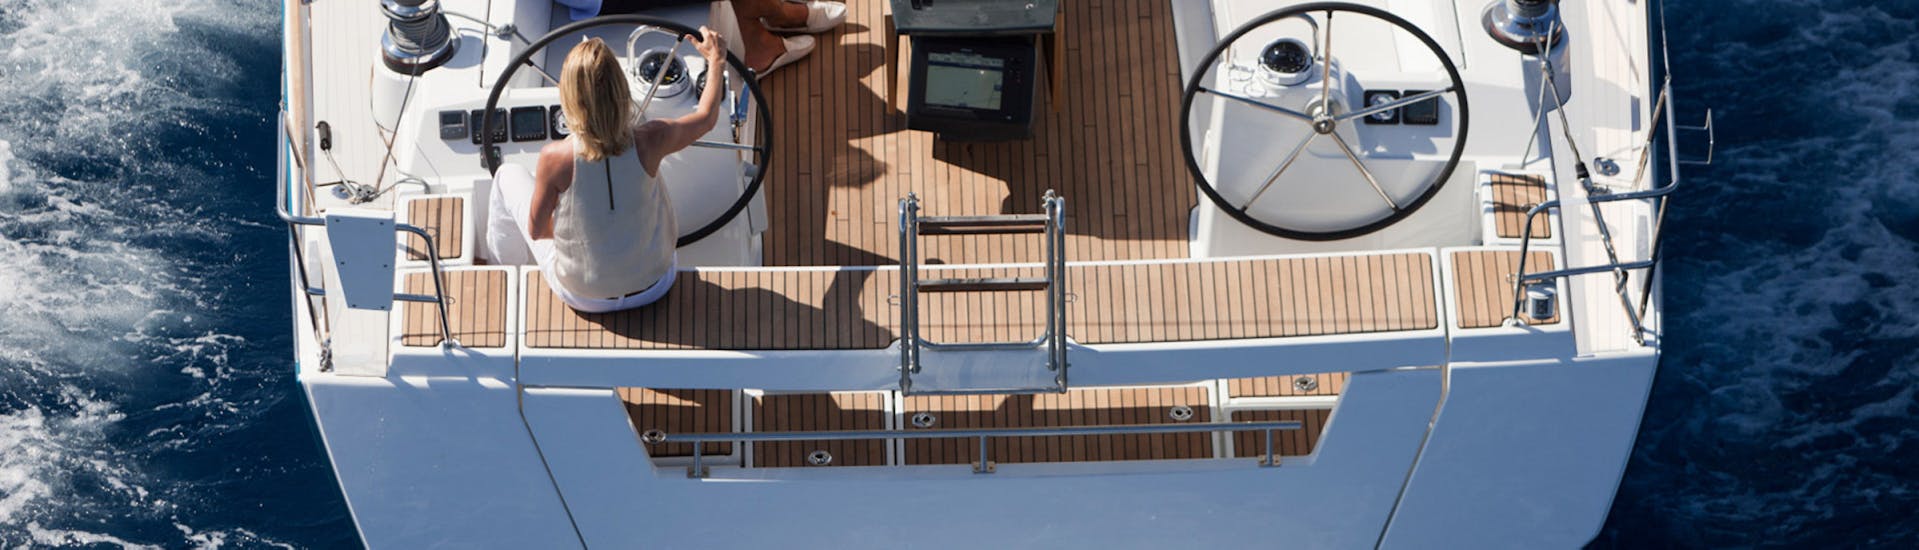 Gita privata in barca a vela da Barcellona a Spiaggia di Barceloneta con visita turistica